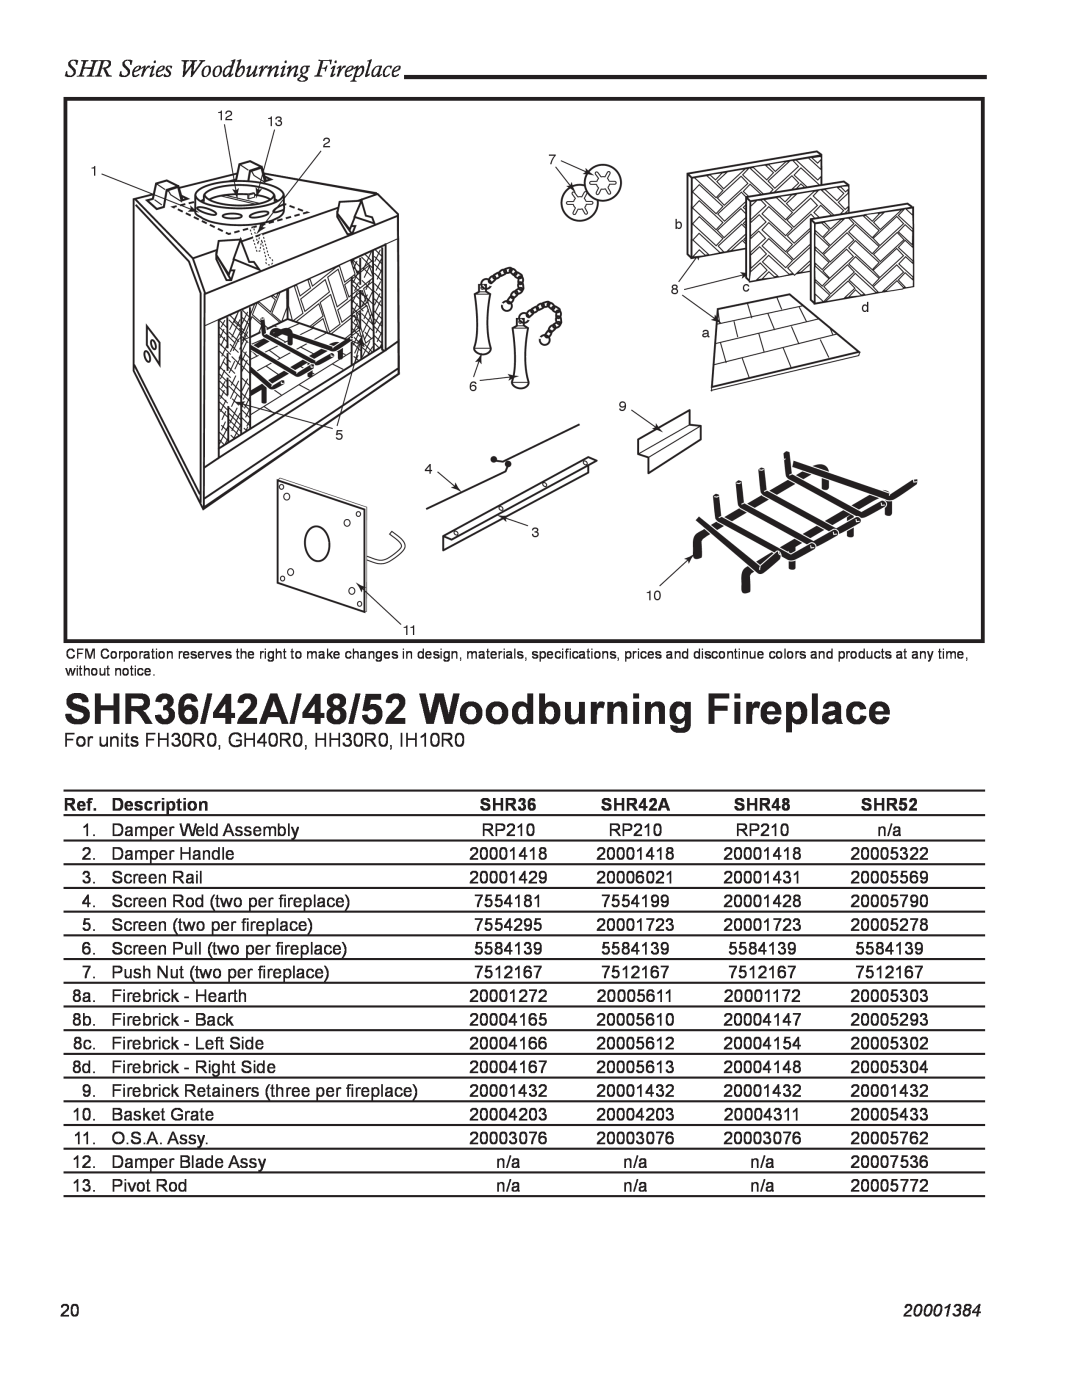 CFM Corporation SHR52 SHR36/42A/48/52 Woodburning Fireplace, For units FH30R0, GH40R0, HH30R0, IH10R0, Description, SHR42A 